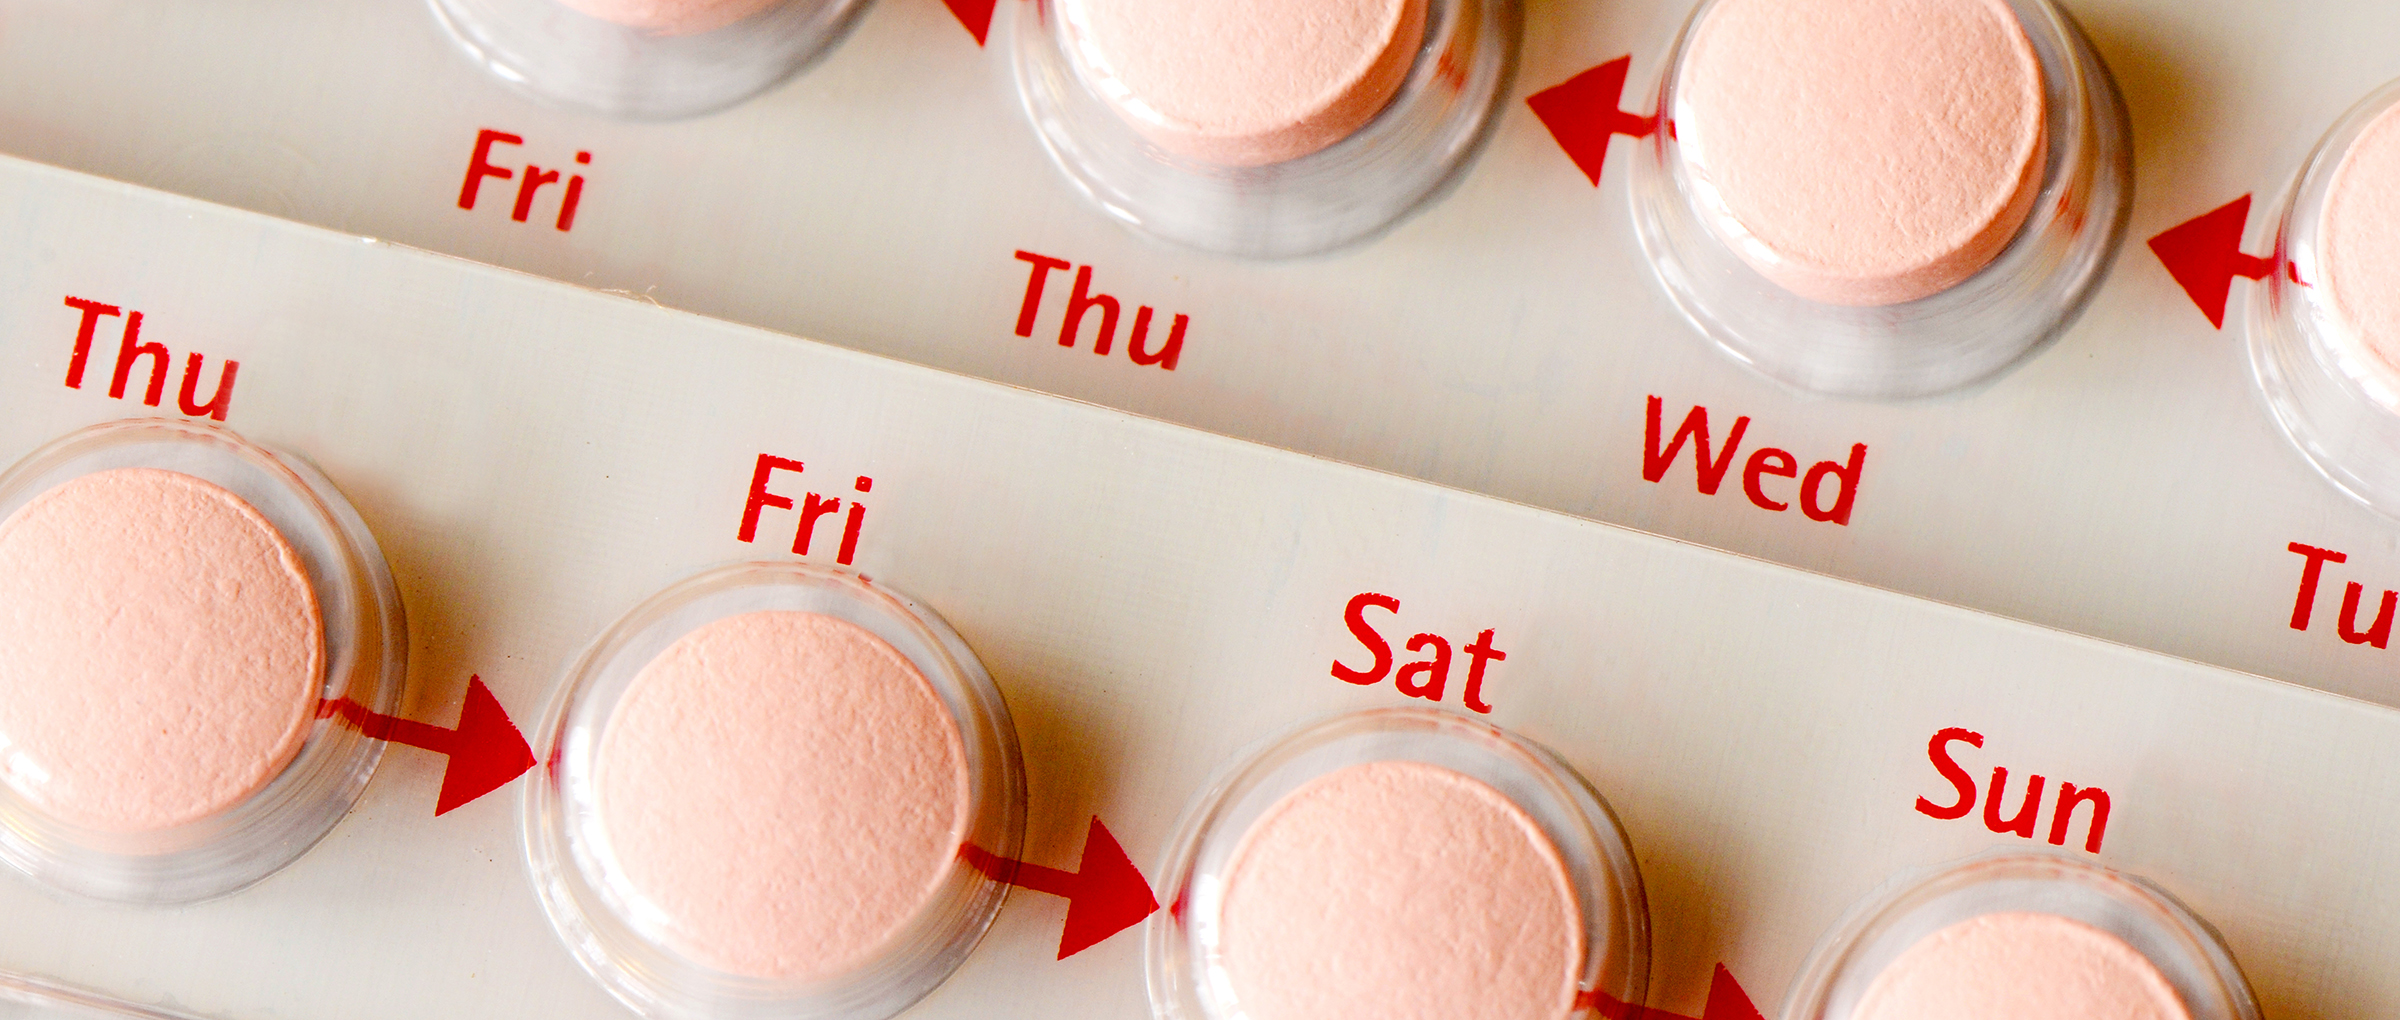 Estroprogestinici e pillola anticoncezionale. Cosa sapere.